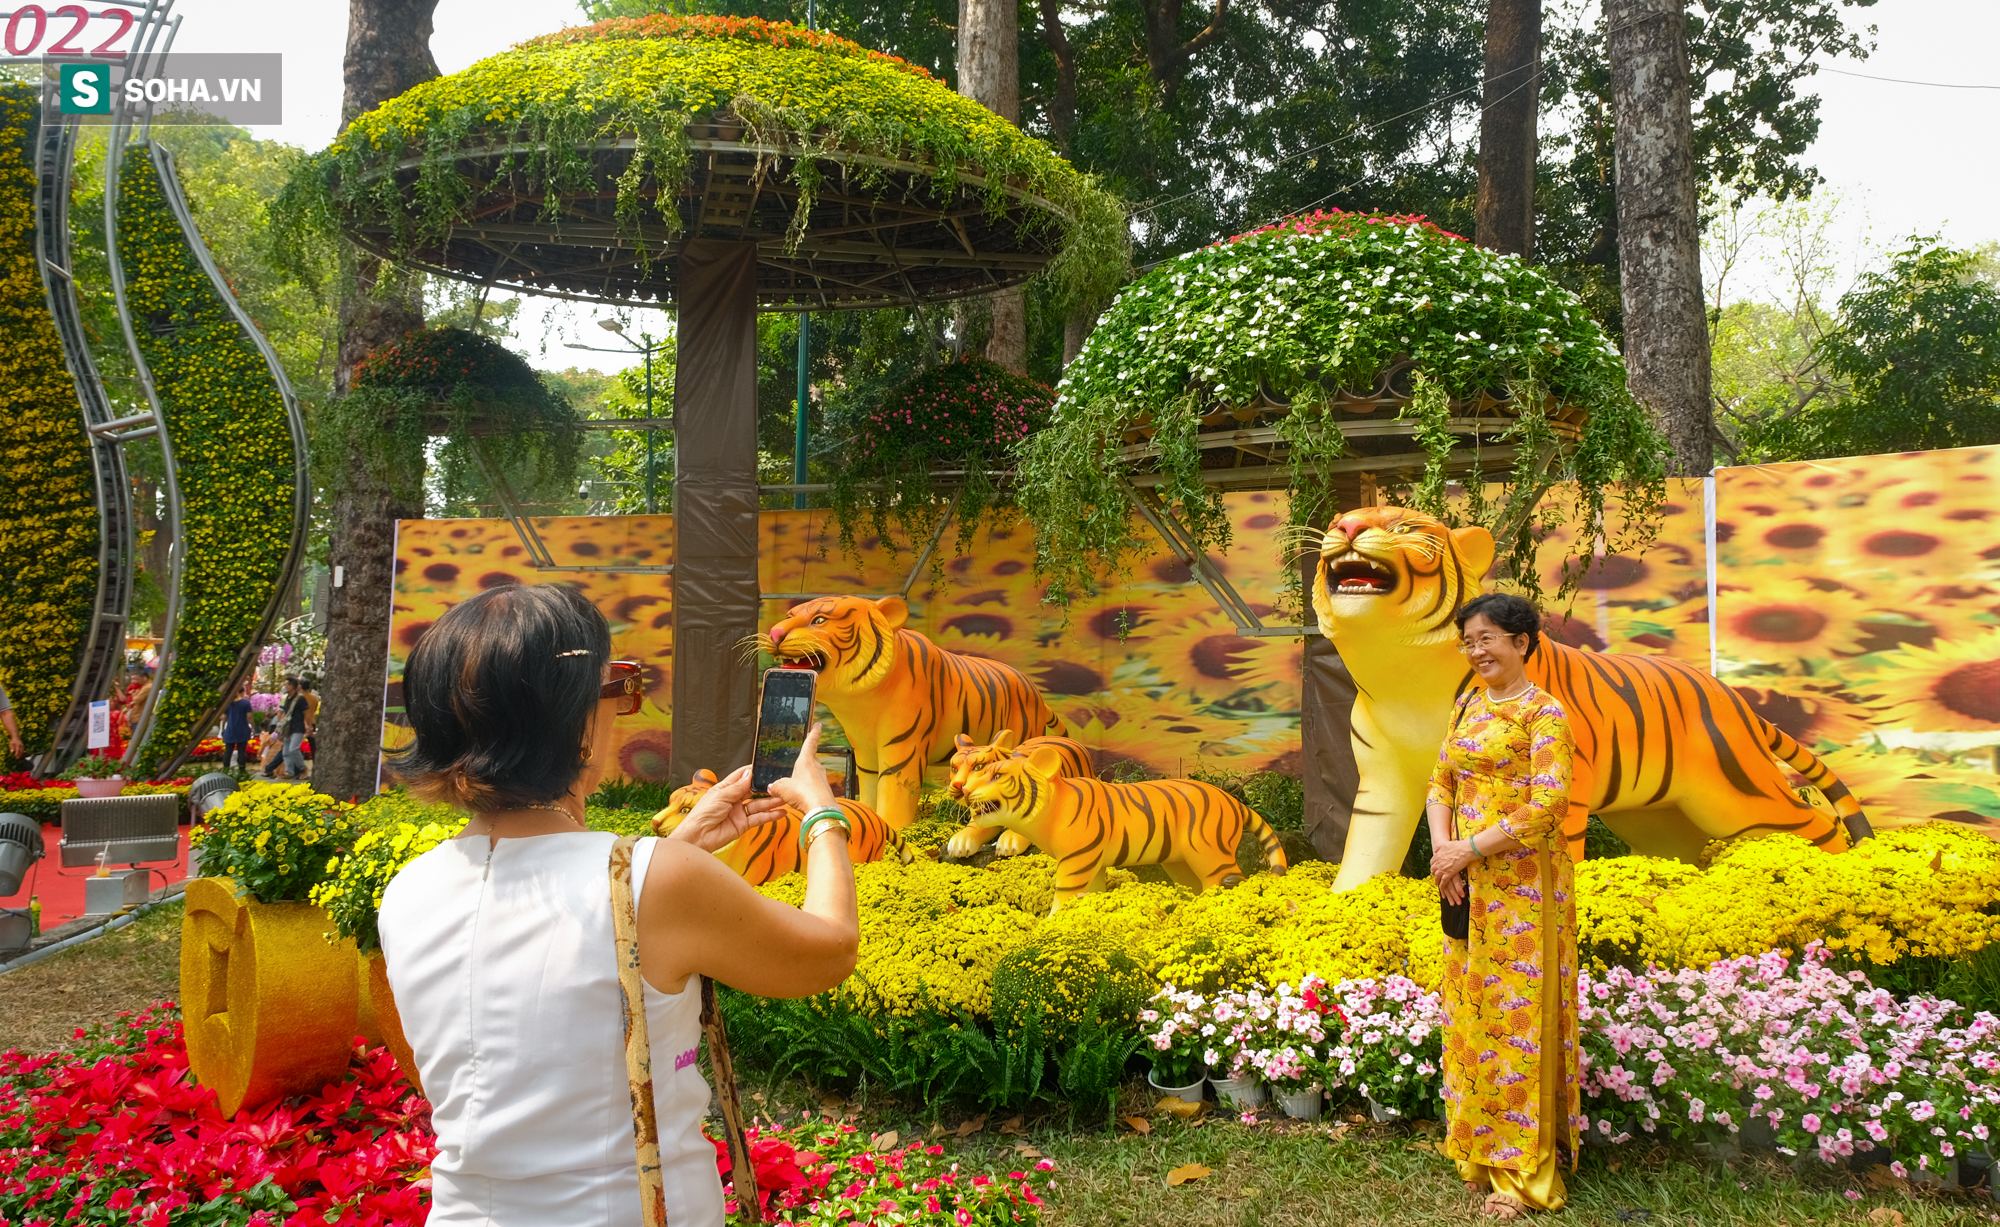 Dòng người háo hức lên đồ chơi Tết ở Hội hoa xuân Tao Đàn, nhiếp ảnh gia kín lịch chụp - Ảnh 2.